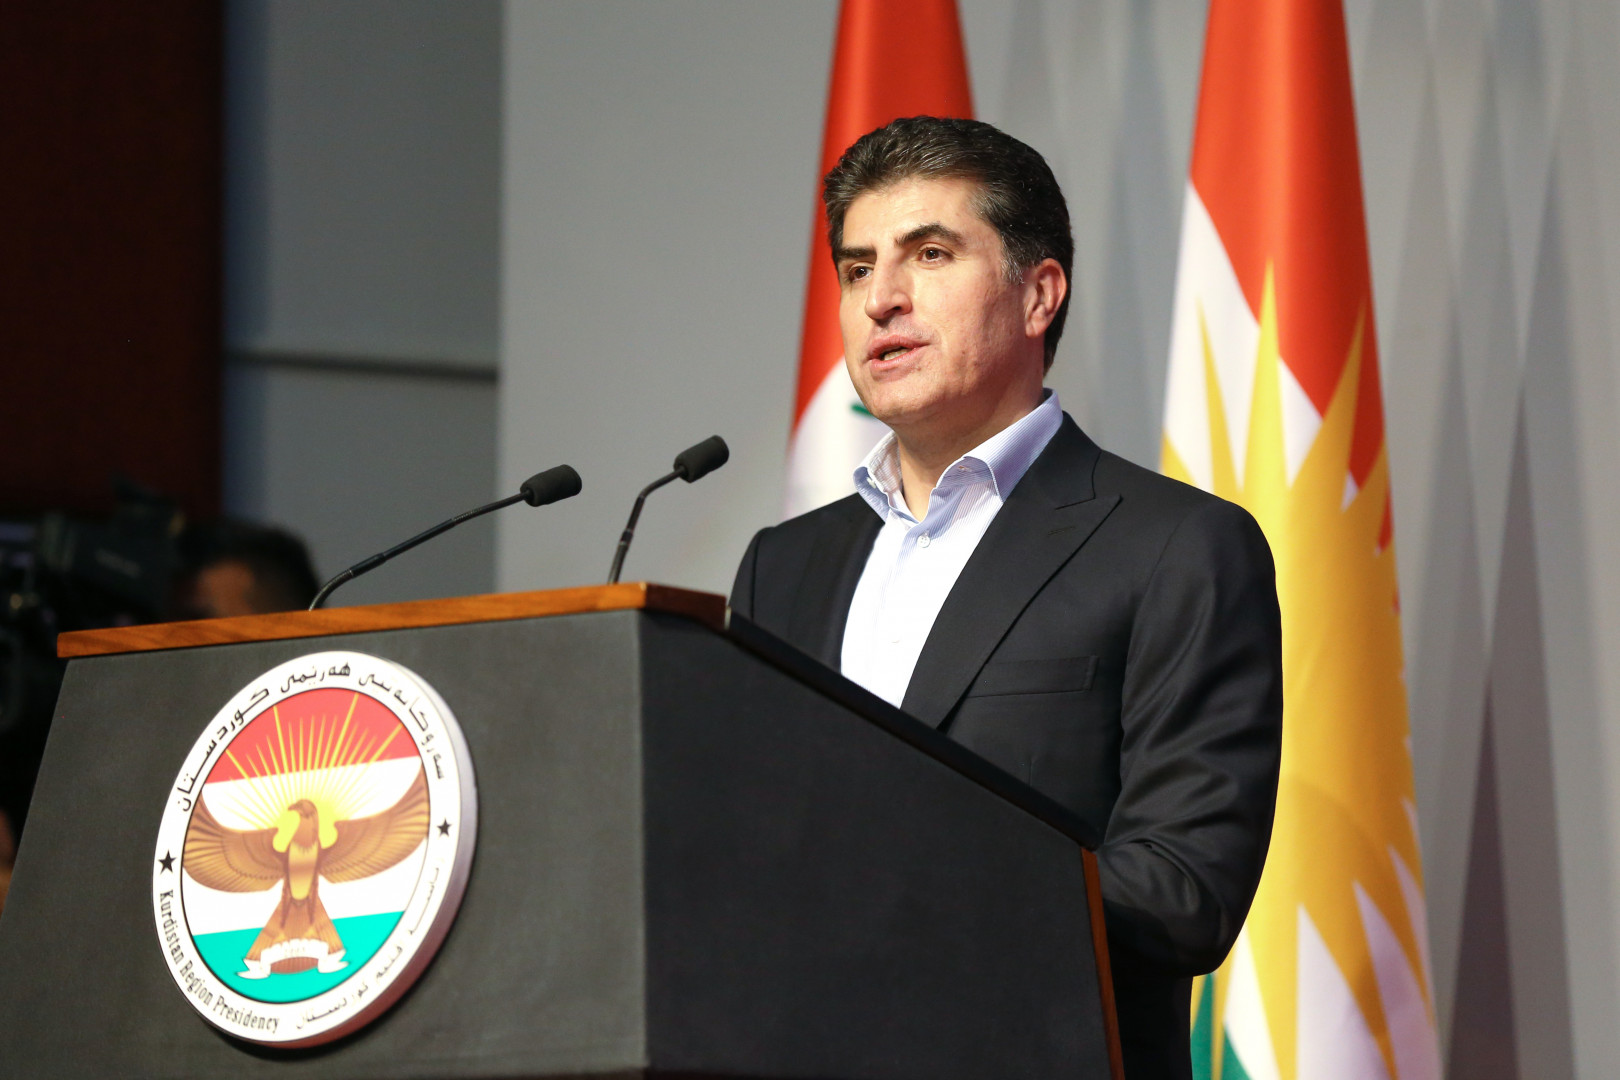  نيجيرفان بارزاني يهنئ الايزيديين برأس سنتهم ويؤكد: ستبقى كوردستان ارض التسامح